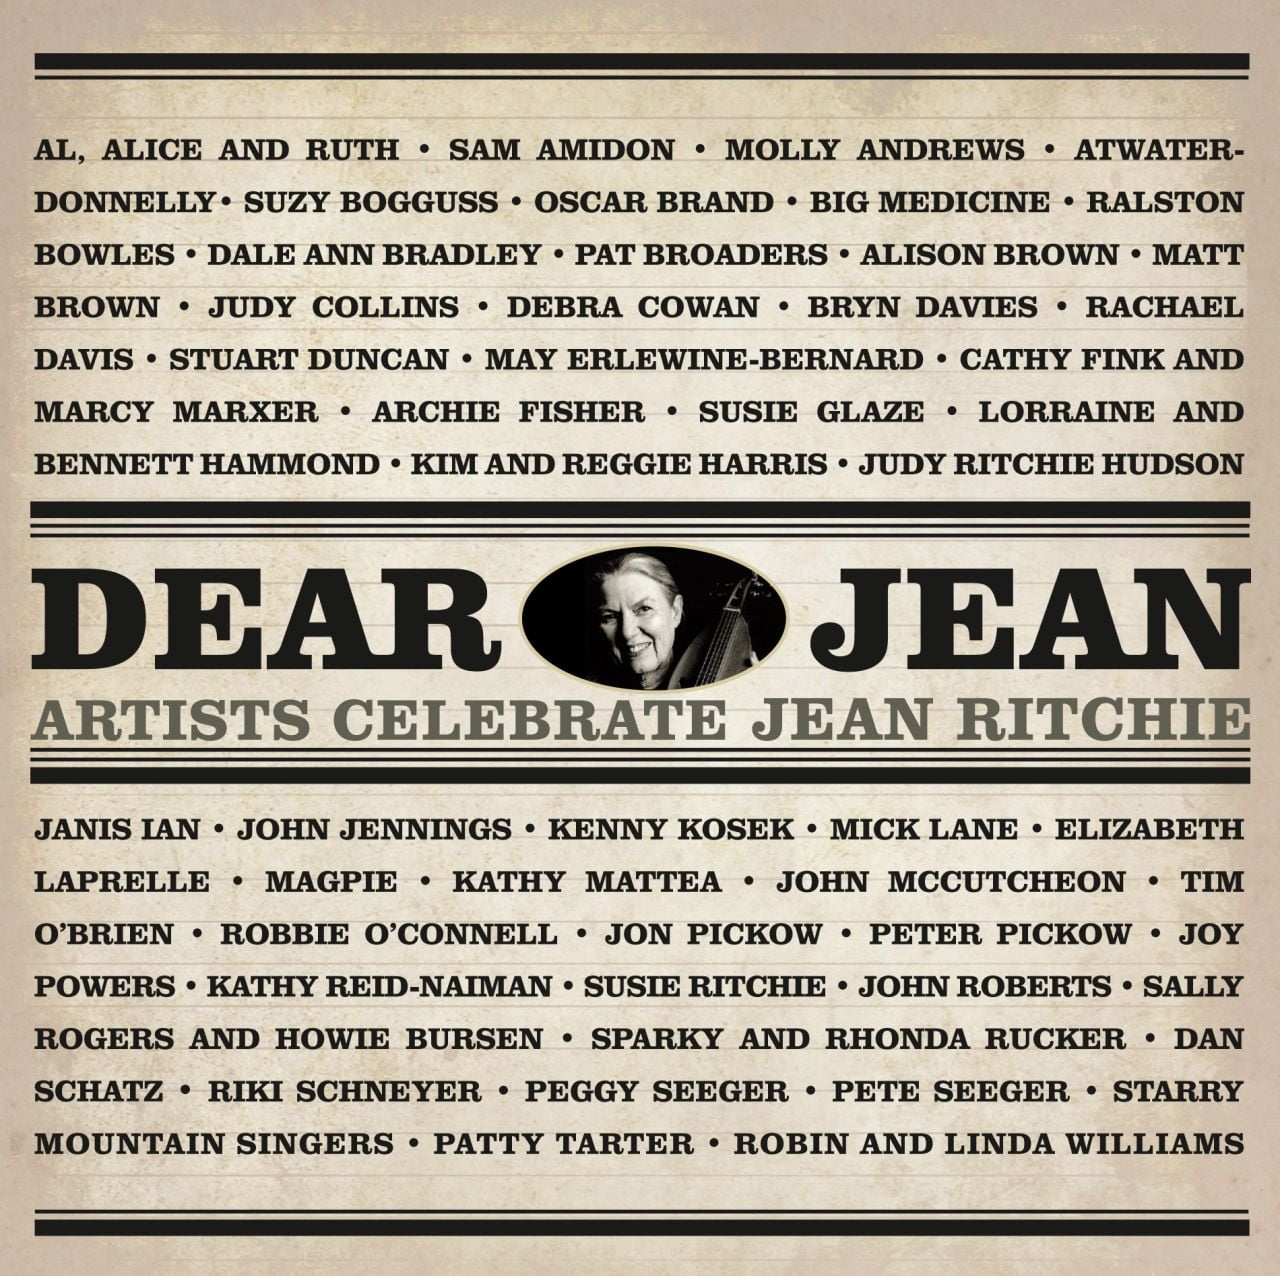 A.A.V.V. - Dear Jean - Artists Celebrate Jean Ritchie cover album